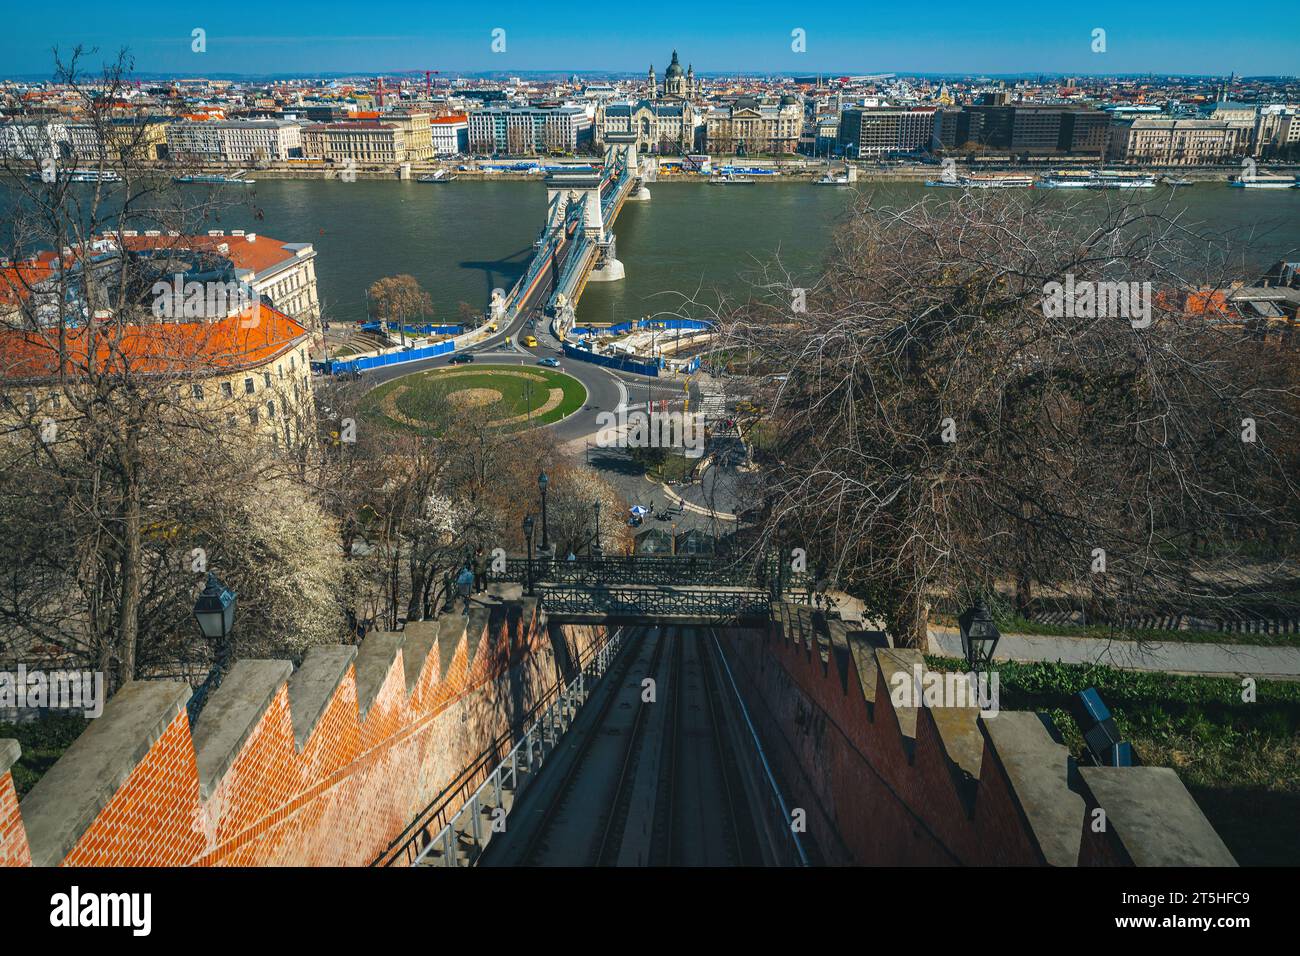 Splendida vista dalla funicolare del Castello di Buda con il Ponte delle catene sul Danubio e splendidi edifici sul lungomare, Budapest, Ungheria, EUR Foto Stock